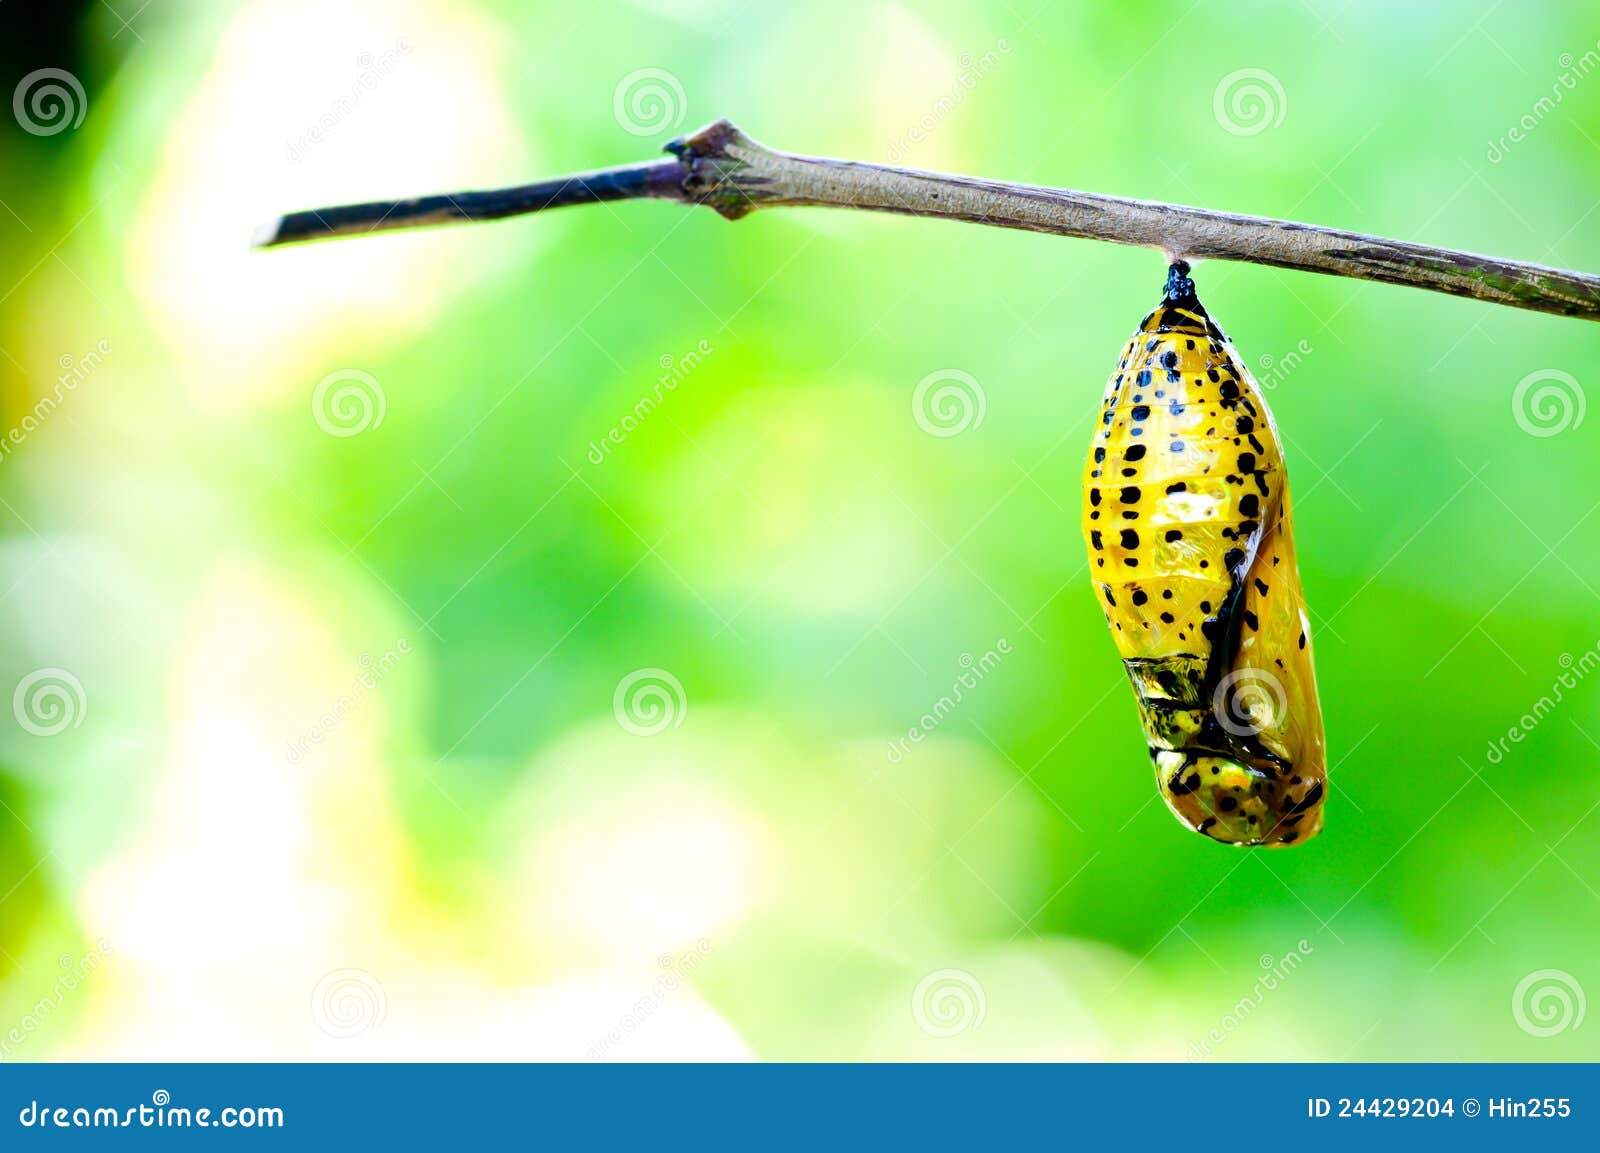 Leeuw B olie doorboren De vlinder van de pop stock foto. Image of leven, larve - 24429204